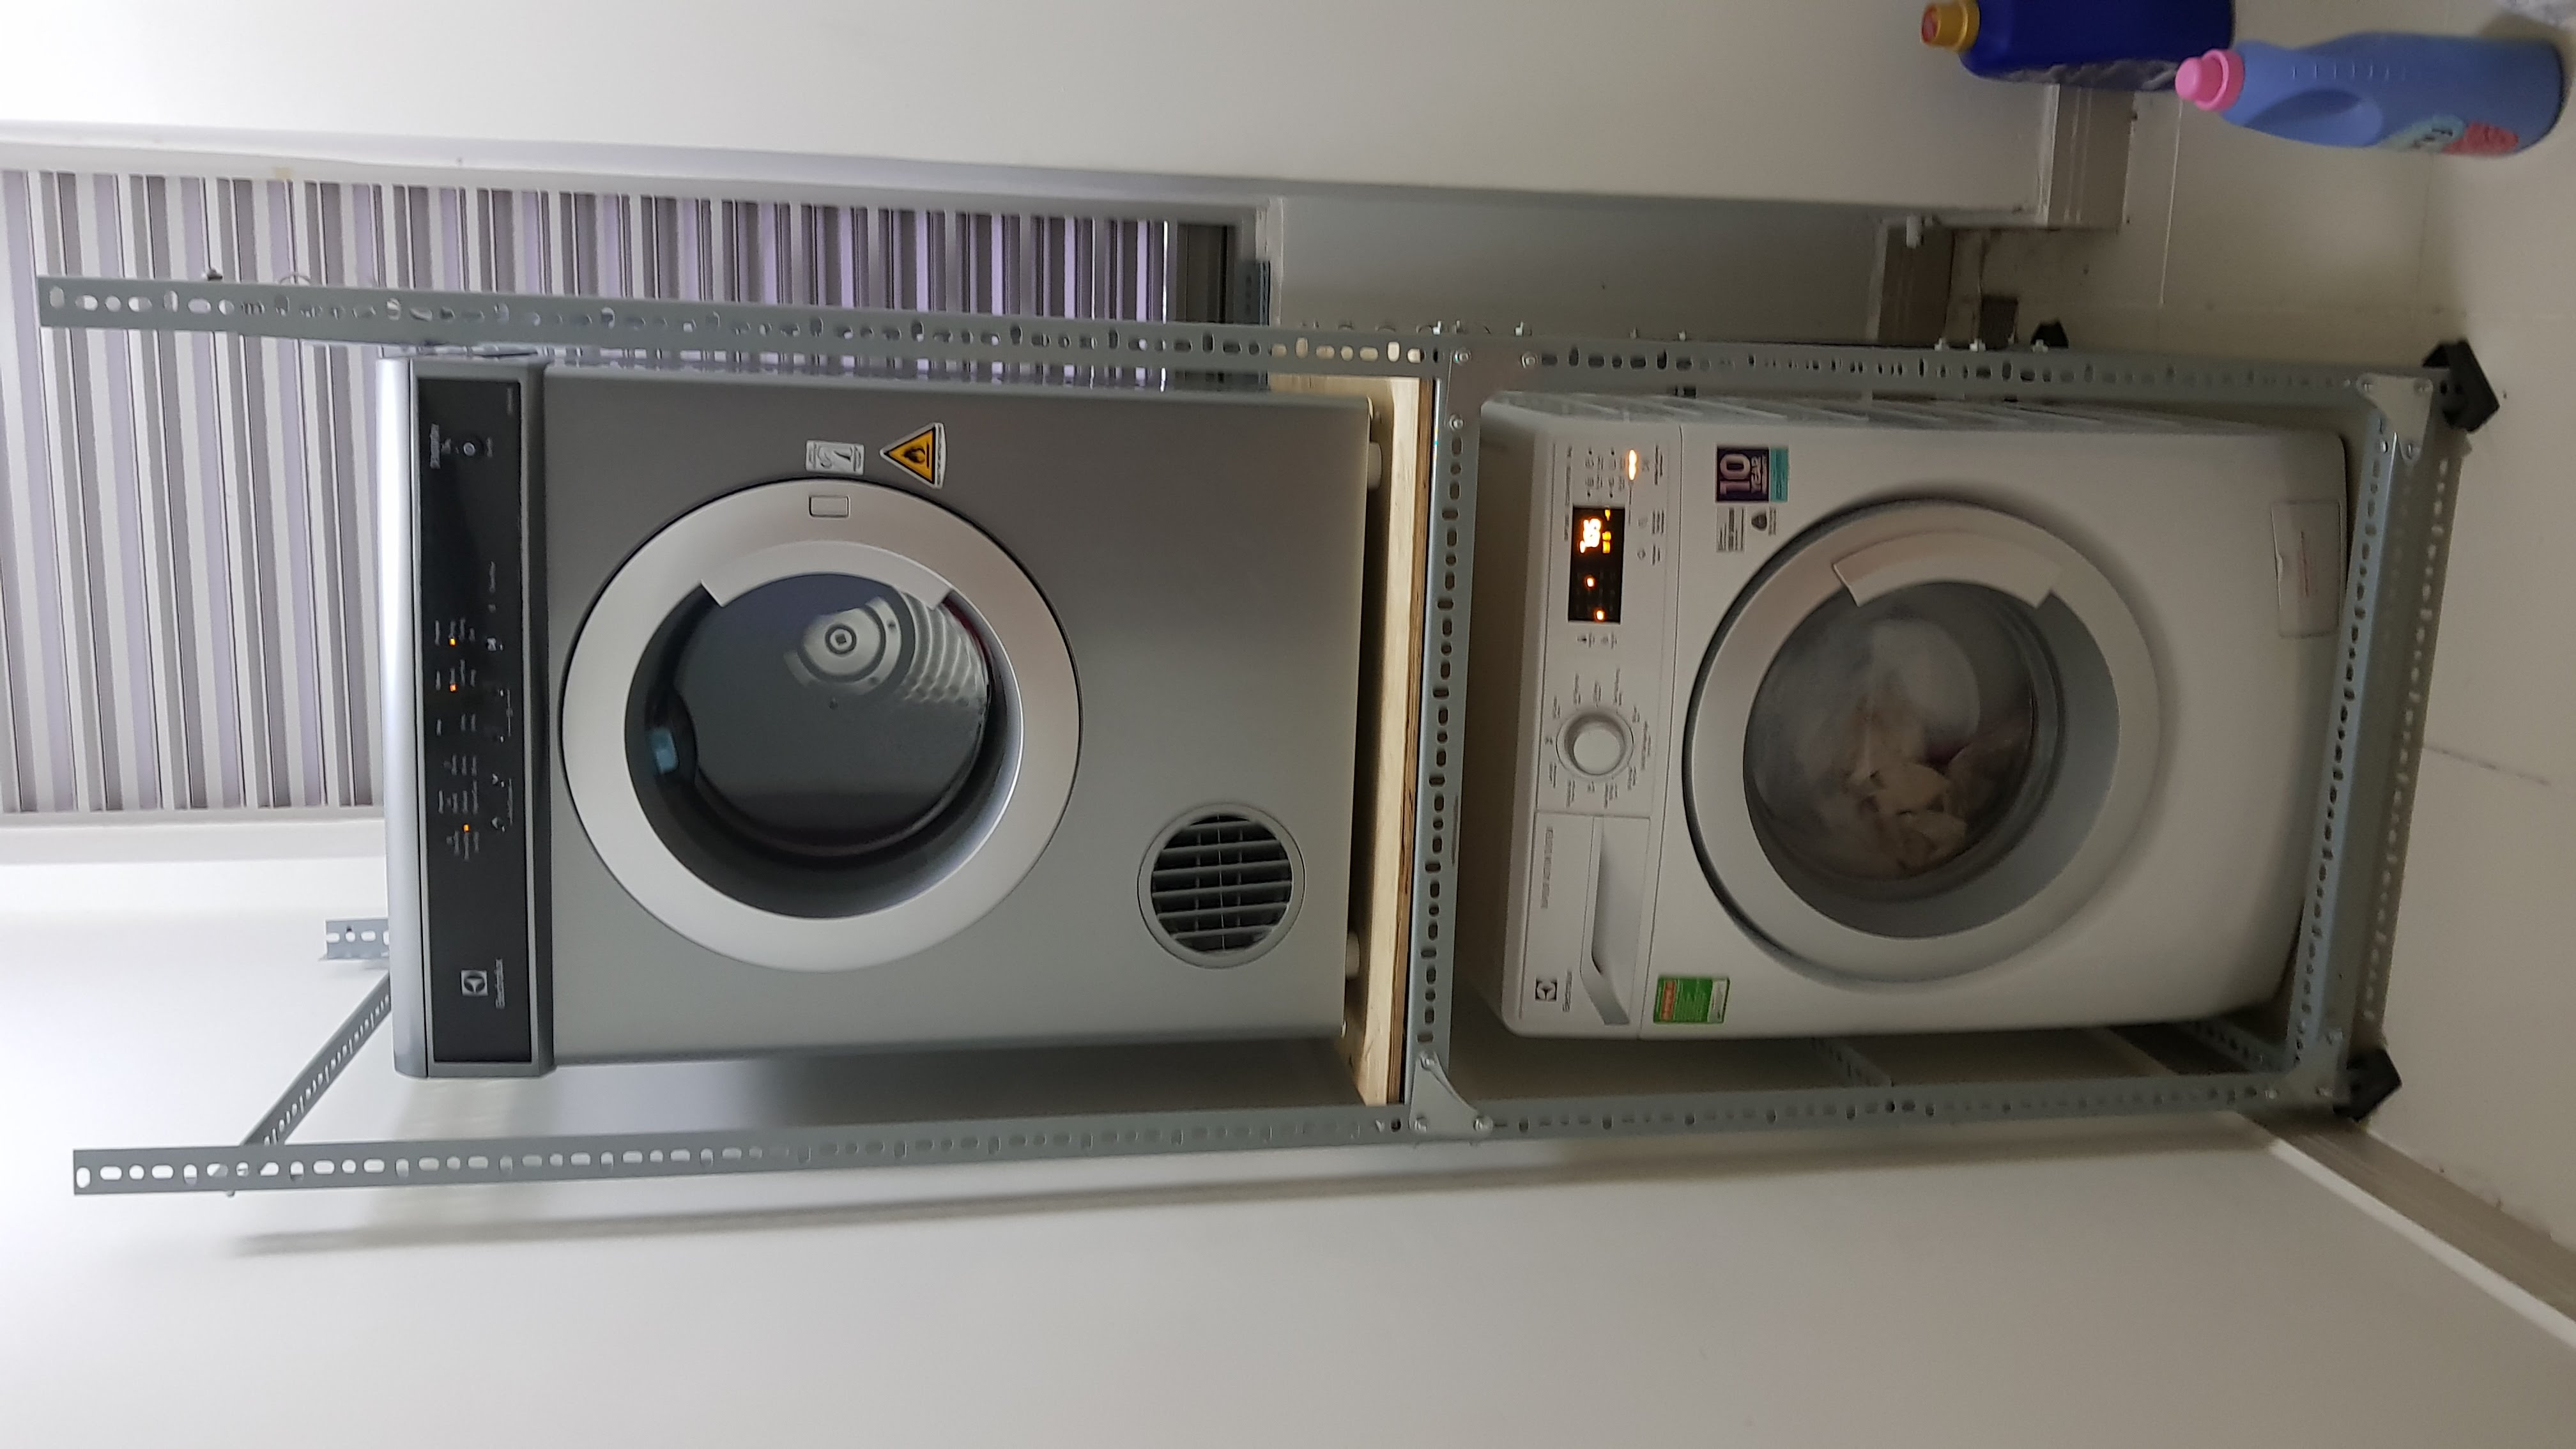 Cách sử dụng máy giặt Electrolux 8kg từ A - Z cho NEWBIE